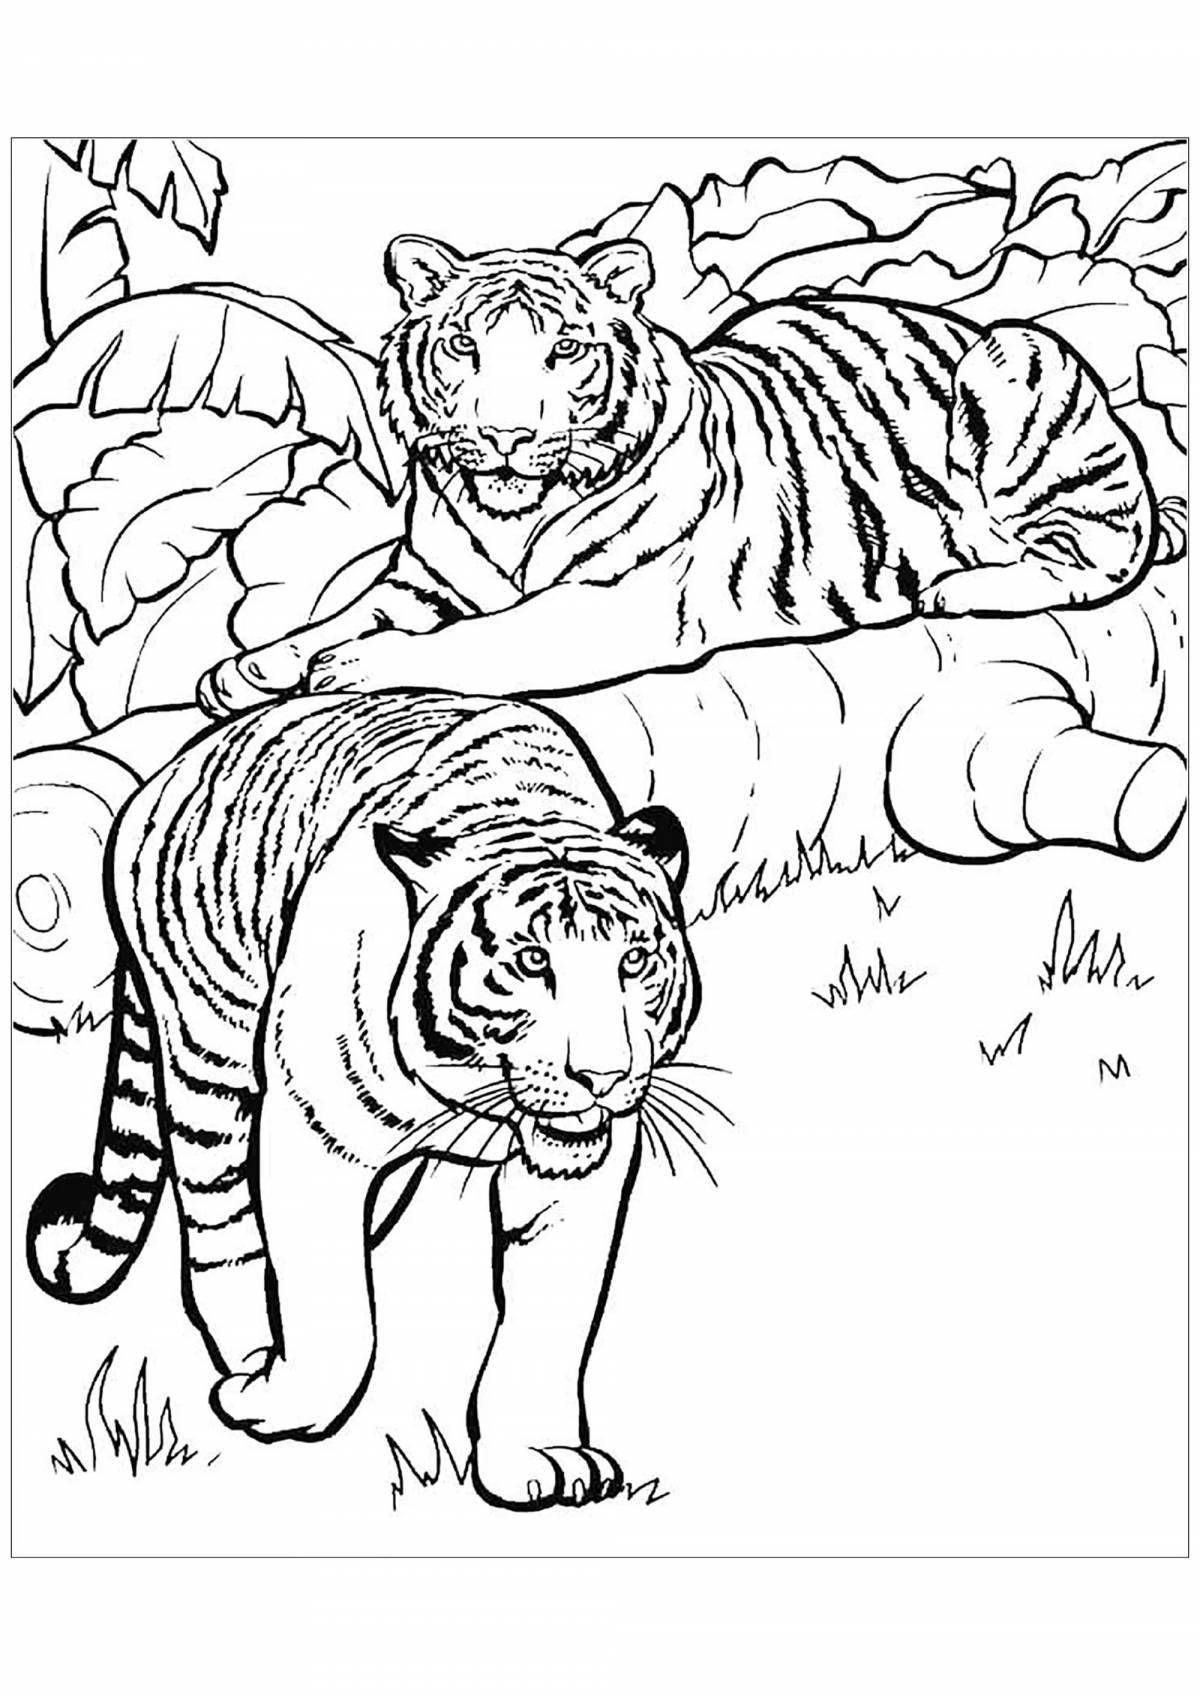 Charming tigress coloring book